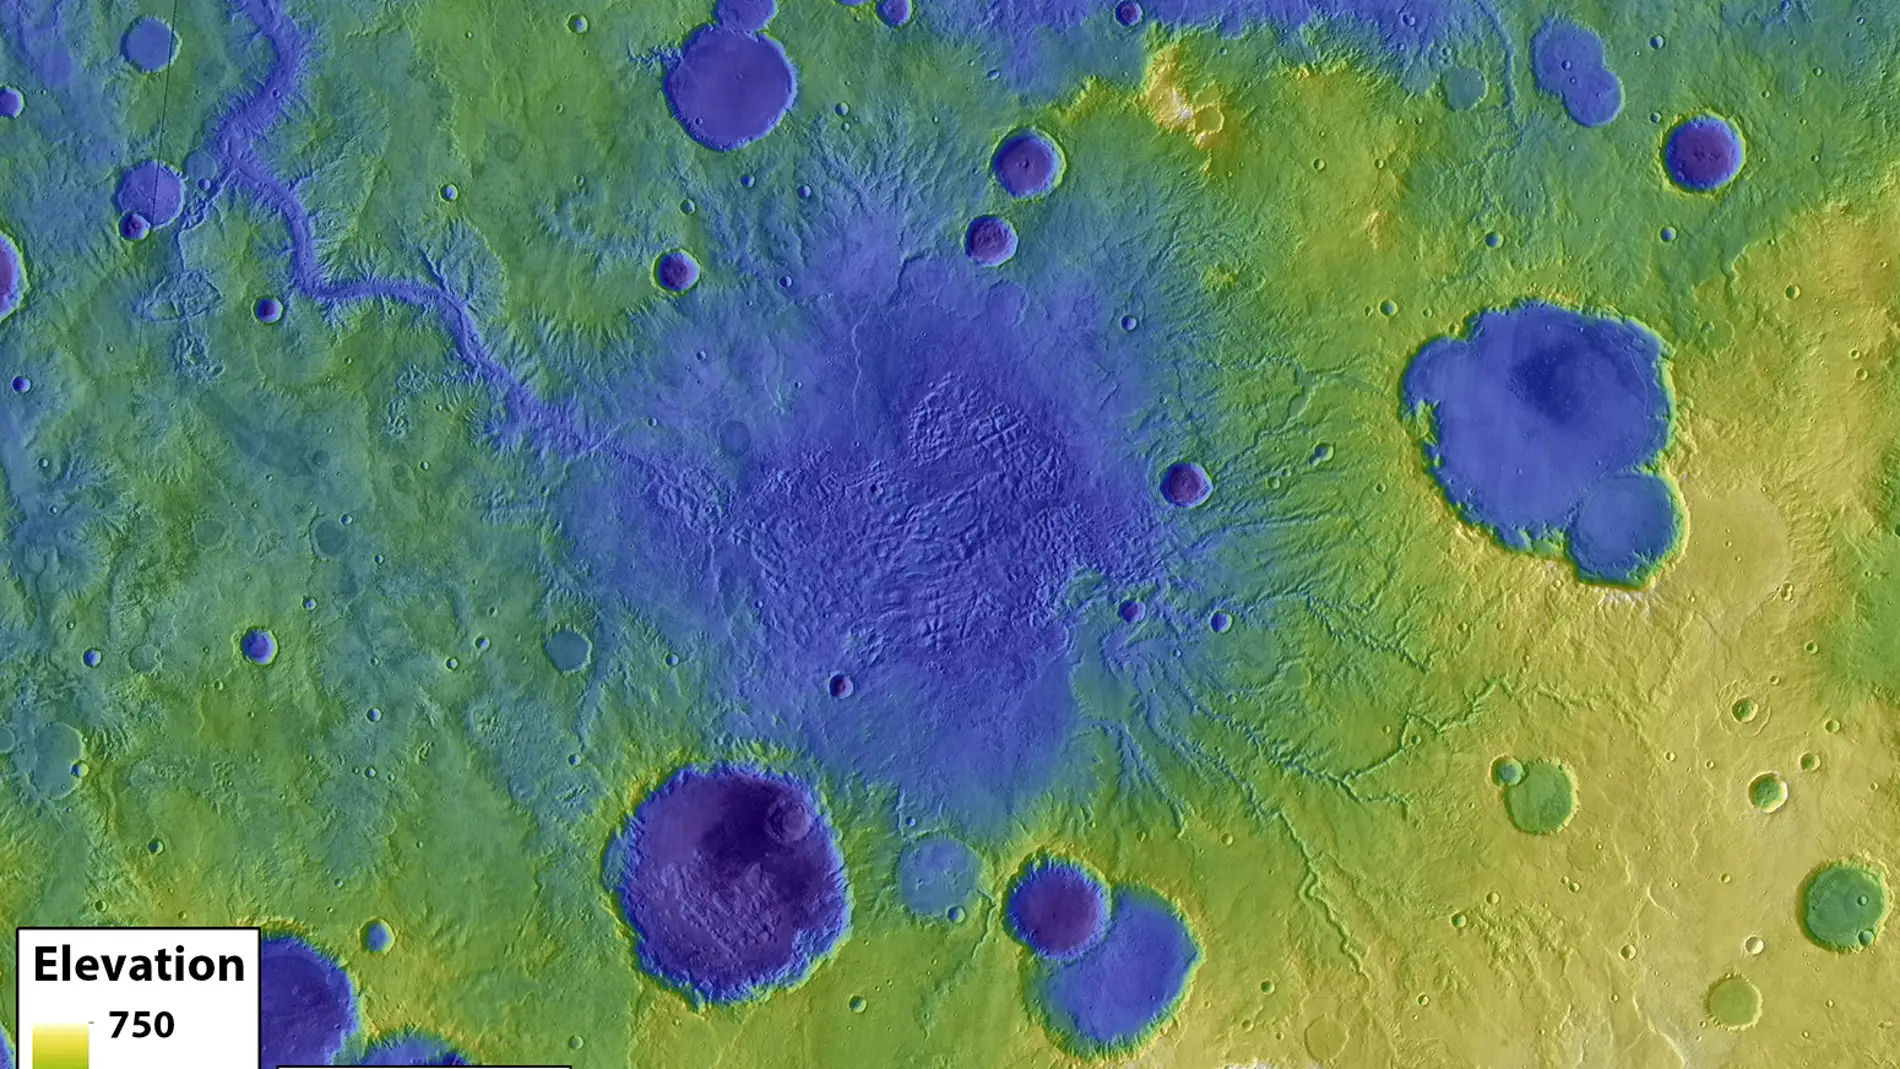 Antiguos cráteres de Marte, con un caño de salida en uno de ellos